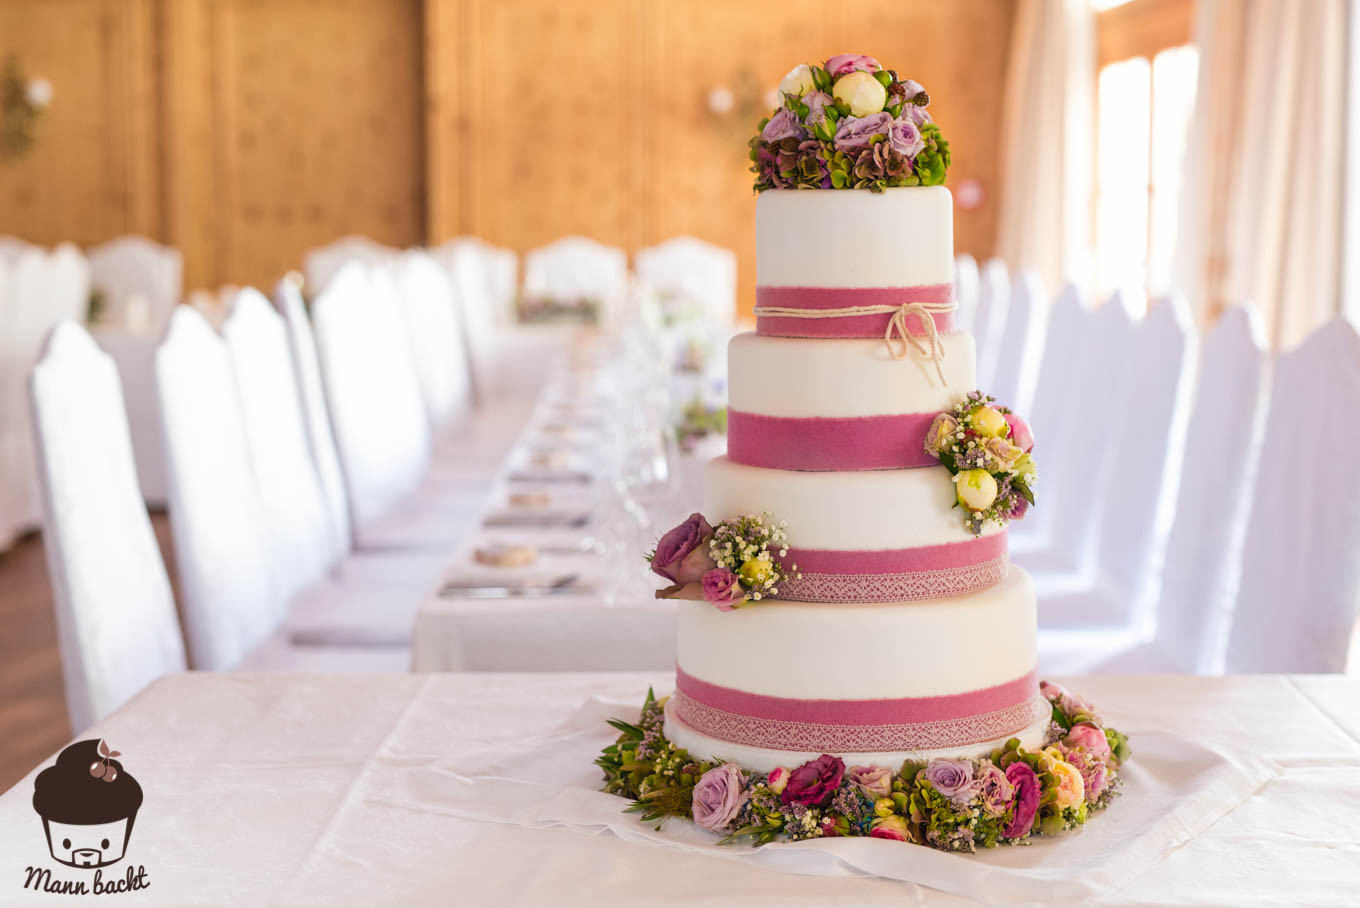 Vintage Hochzeitstorte
 Vintage Wedding Cake im Blumenmeer Mann backt